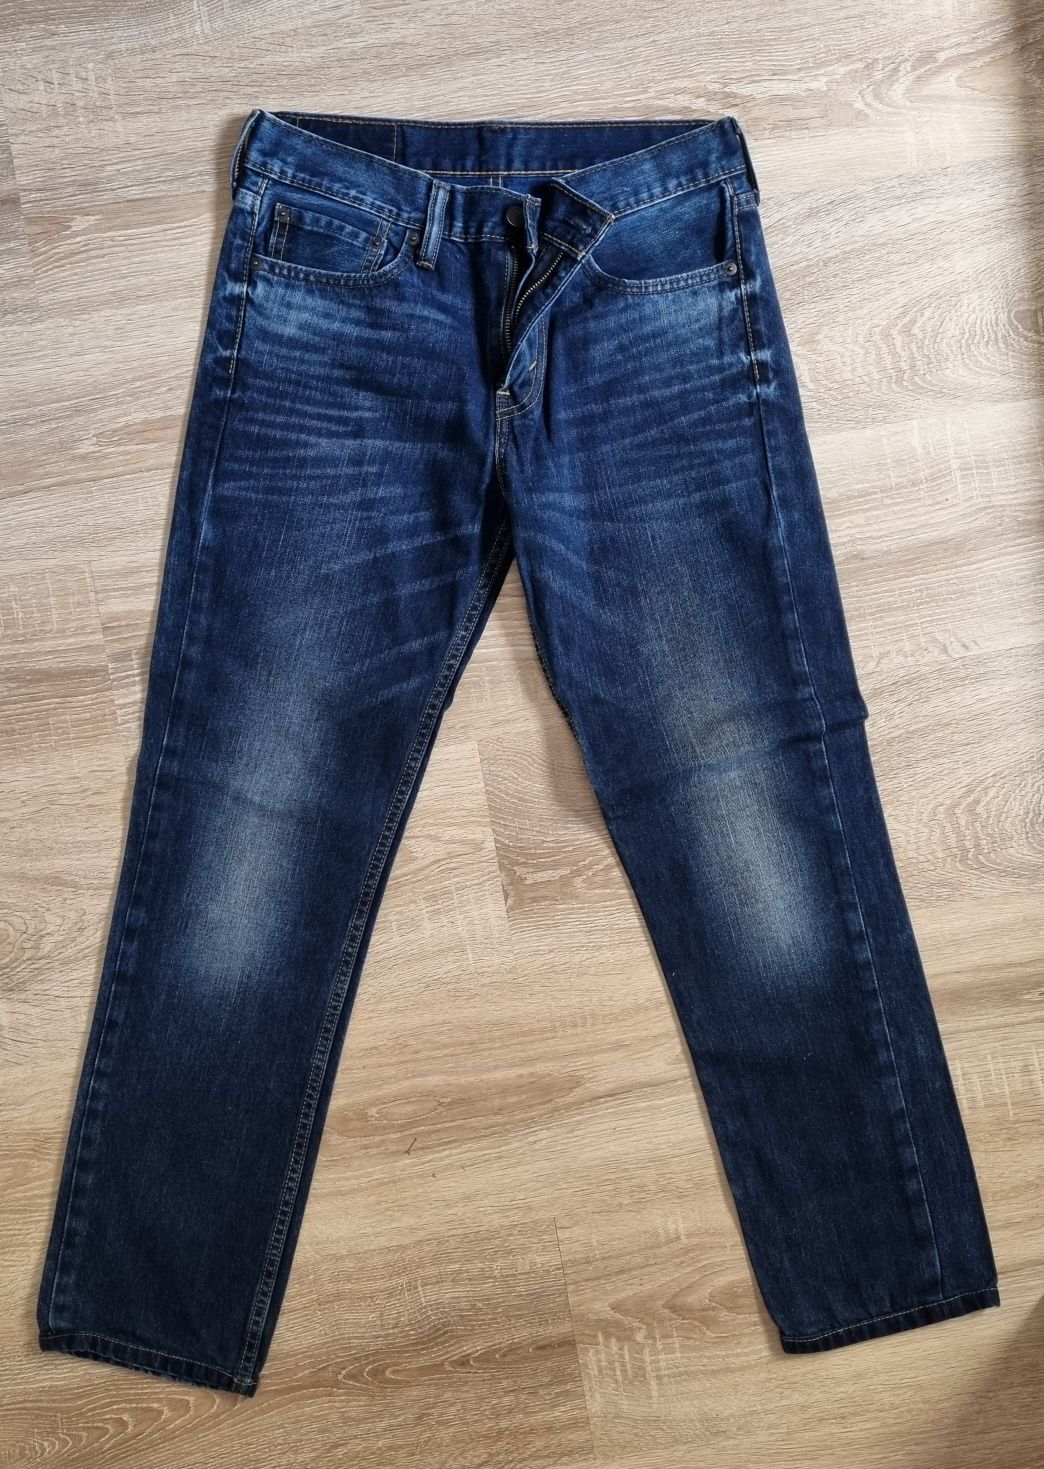 Levi's 511 - calças usadas 1x